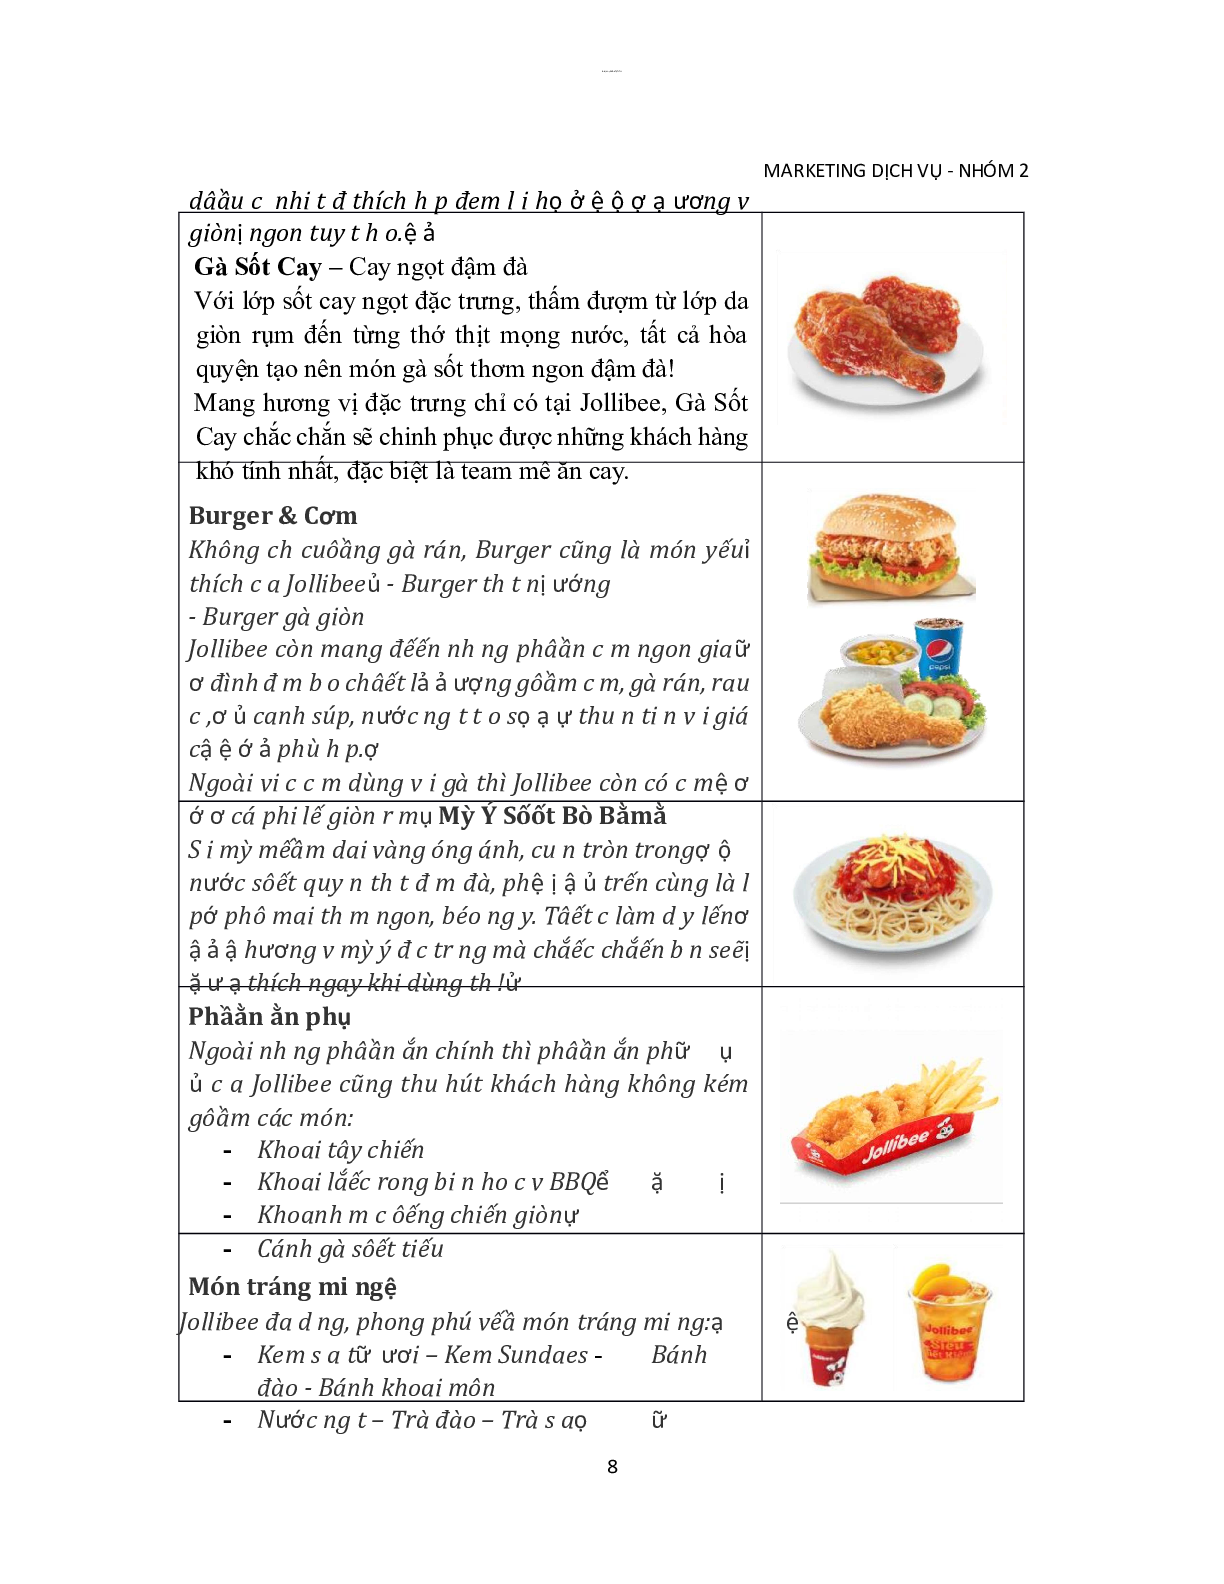 Jollibee - Giải pháp marketing dịch vụ ăn uống | Tiểu luận môn Marketing dịch vụ | PTIT (trang 8)